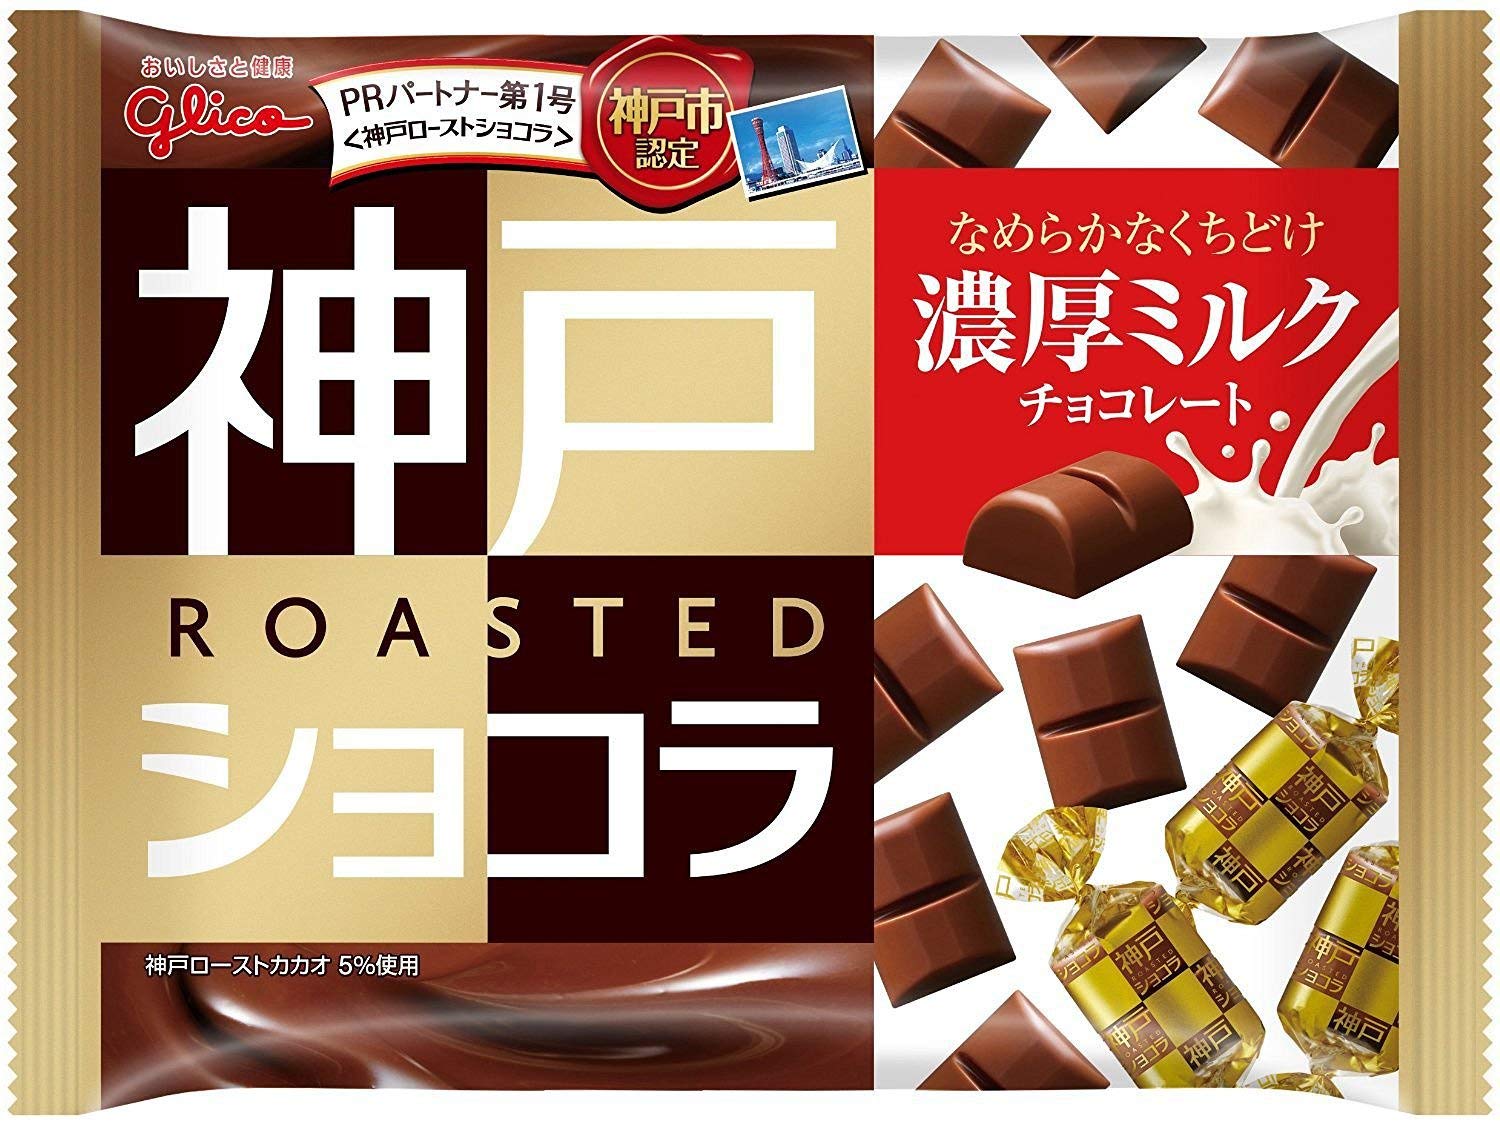 サクサク食感 江崎グリコ 神戸ローストショコラ 185g×15個入り 実物 当店一番人気 濃厚ミルクチョコレート